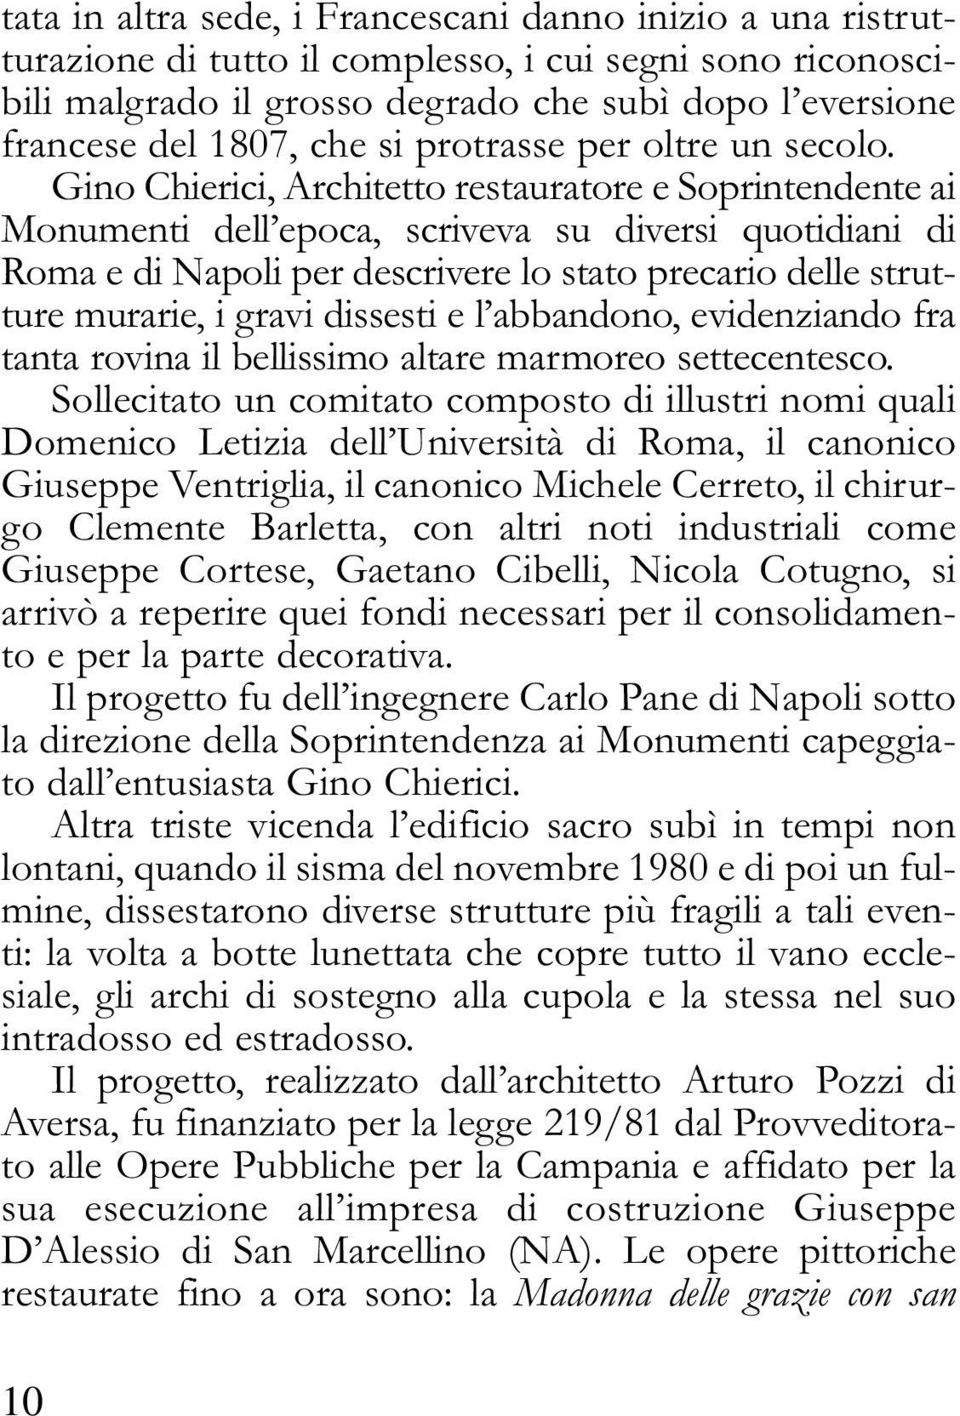 Gino Chierici, Architetto restauratore e Soprintendente ai Monumenti dell epoca, scriveva su diversi quotidiani di Roma e di Napoli per descrivere lo stato precario delle strutture murarie, i gravi